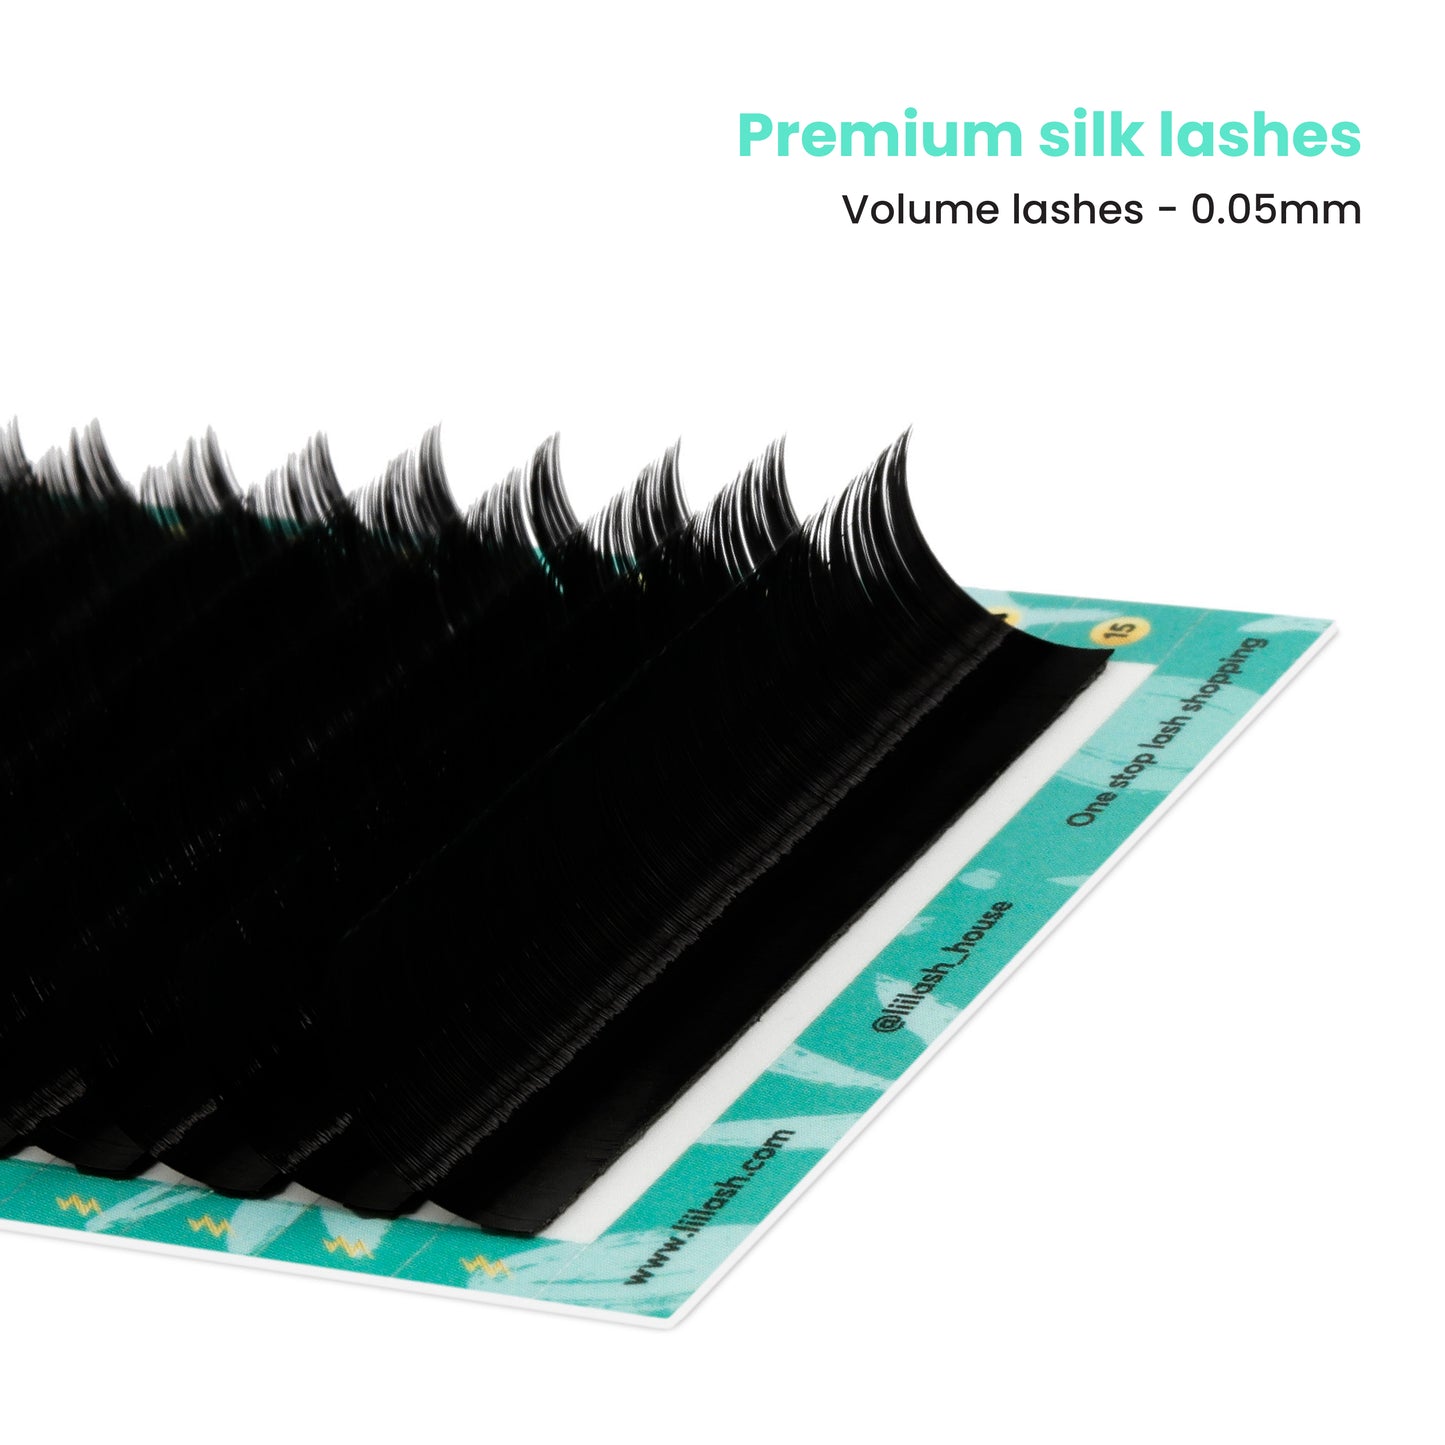 Premium Silk volume lashes 0.05mm